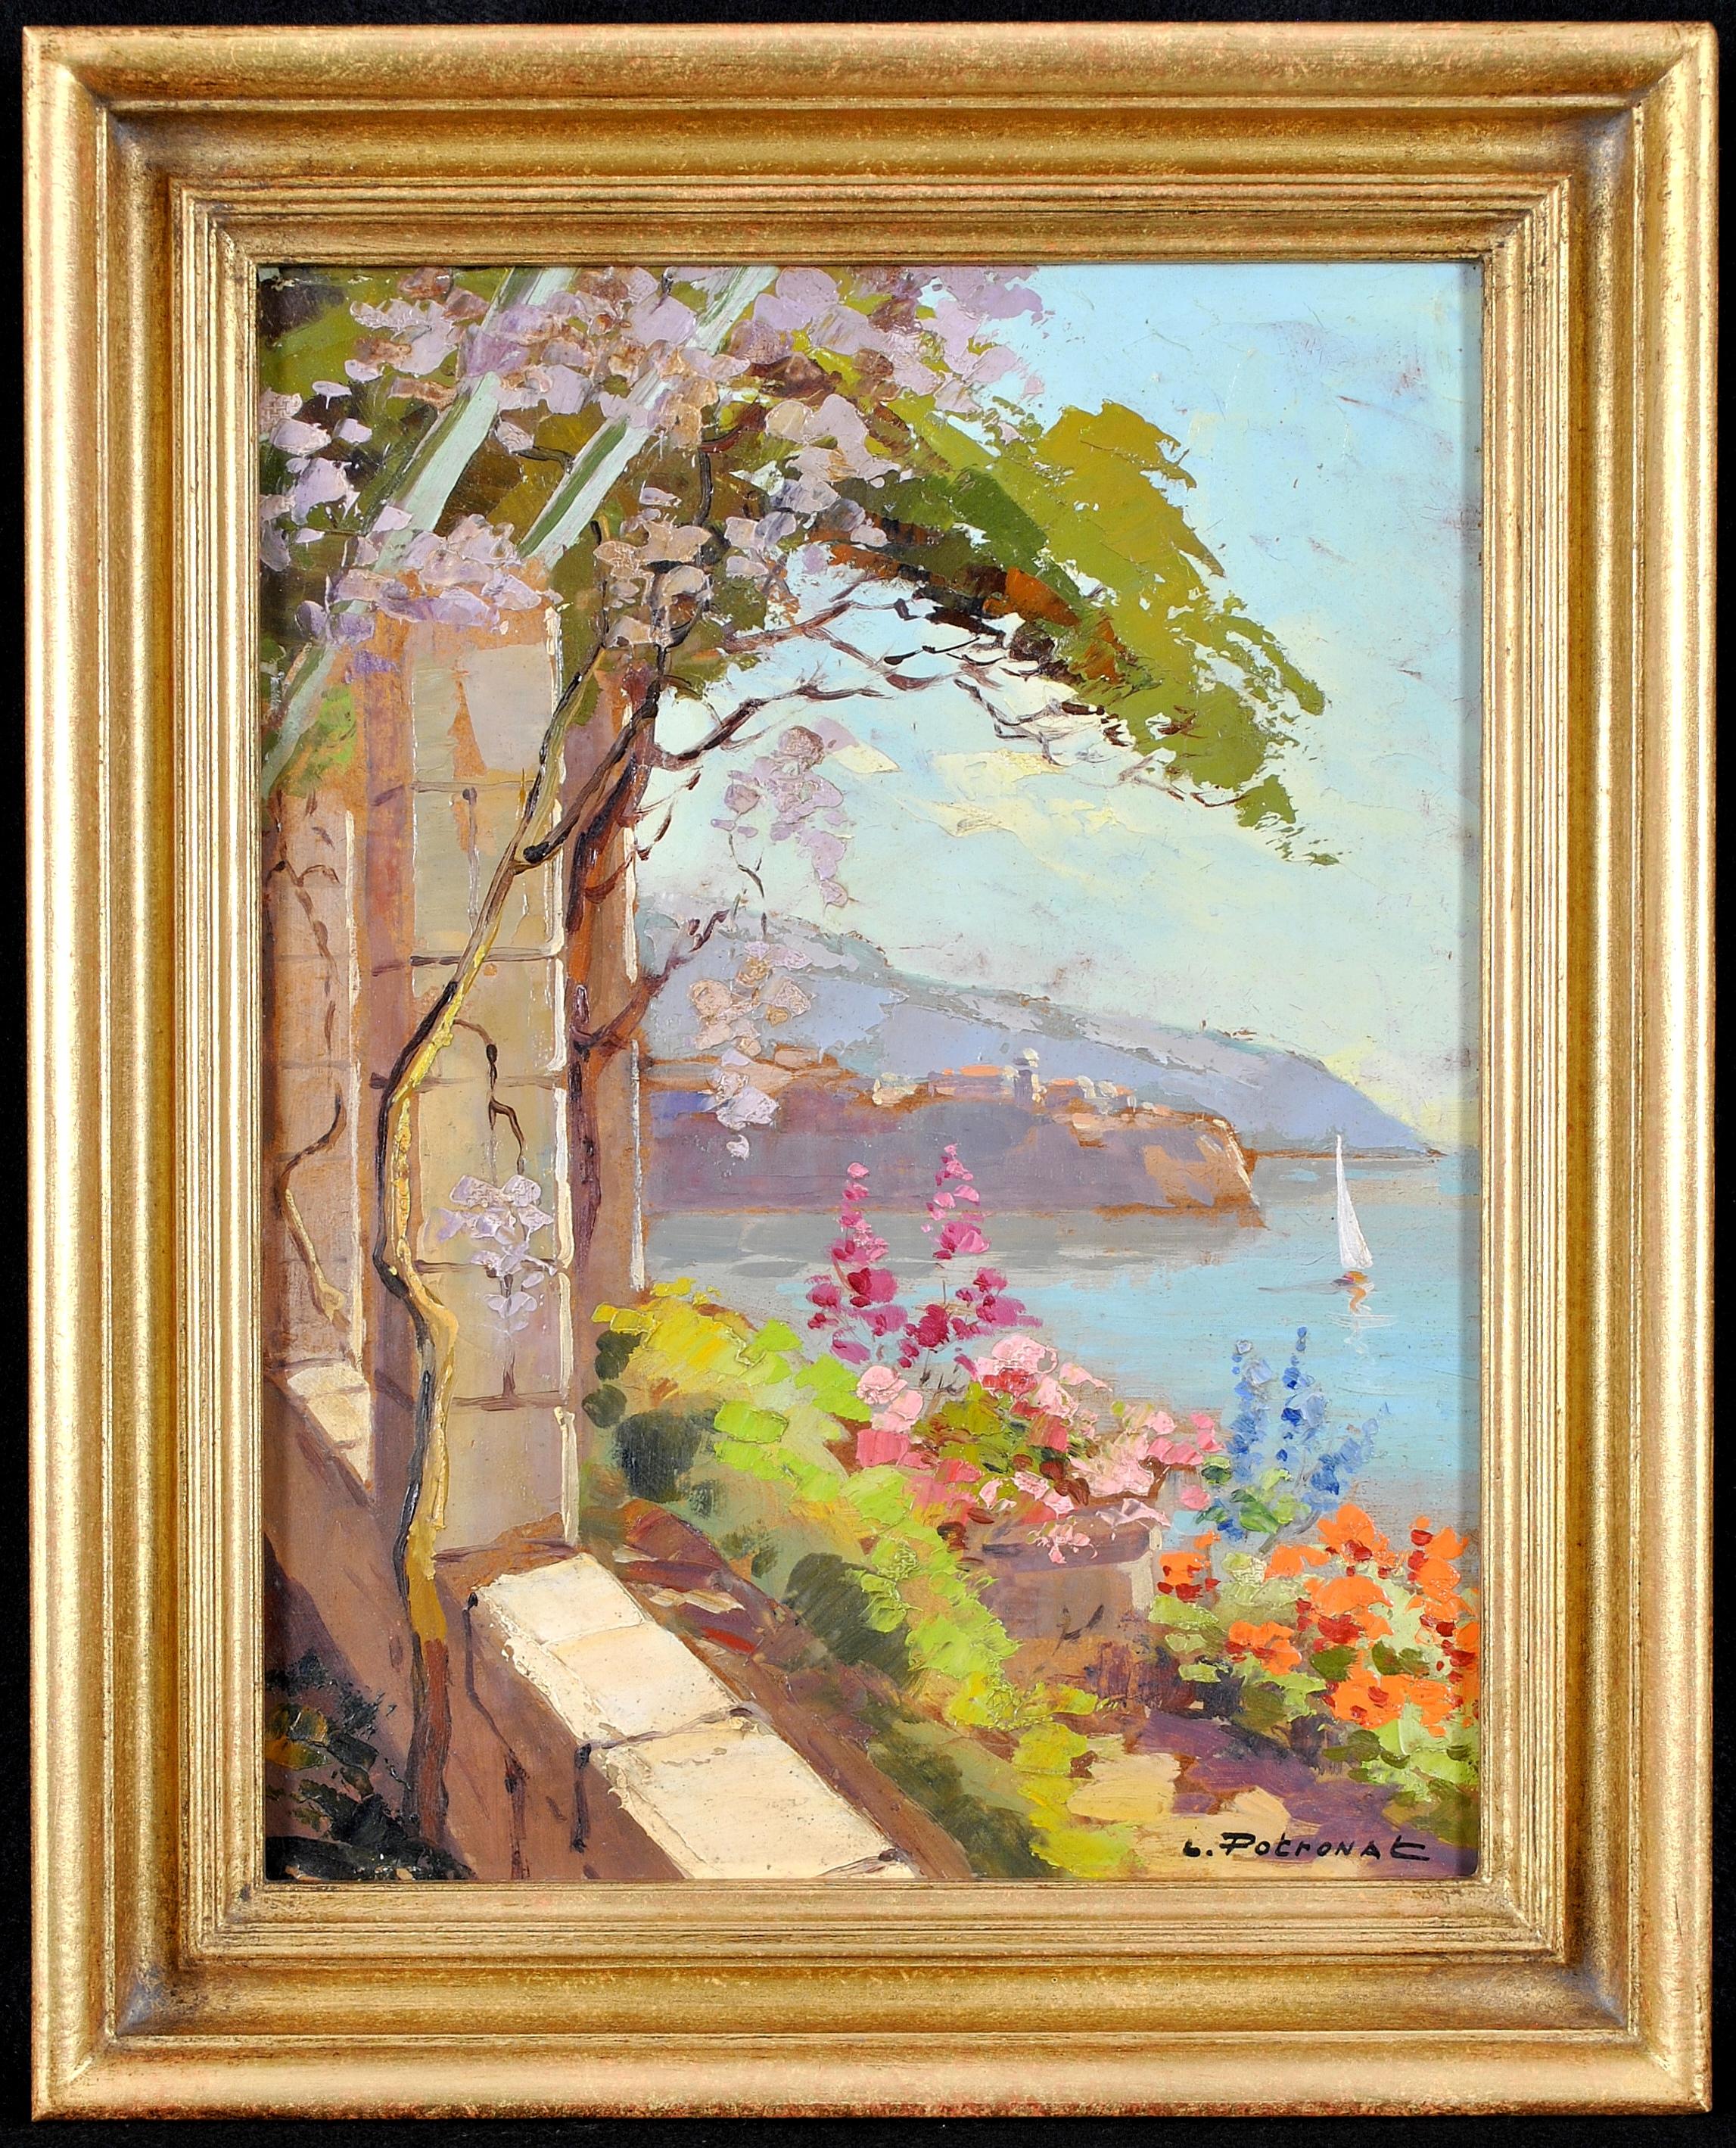 Lucien Potronat Landscape Painting – Cote d'Azur – Französische Riviera von Balcony, impressionistisches Ölgemälde